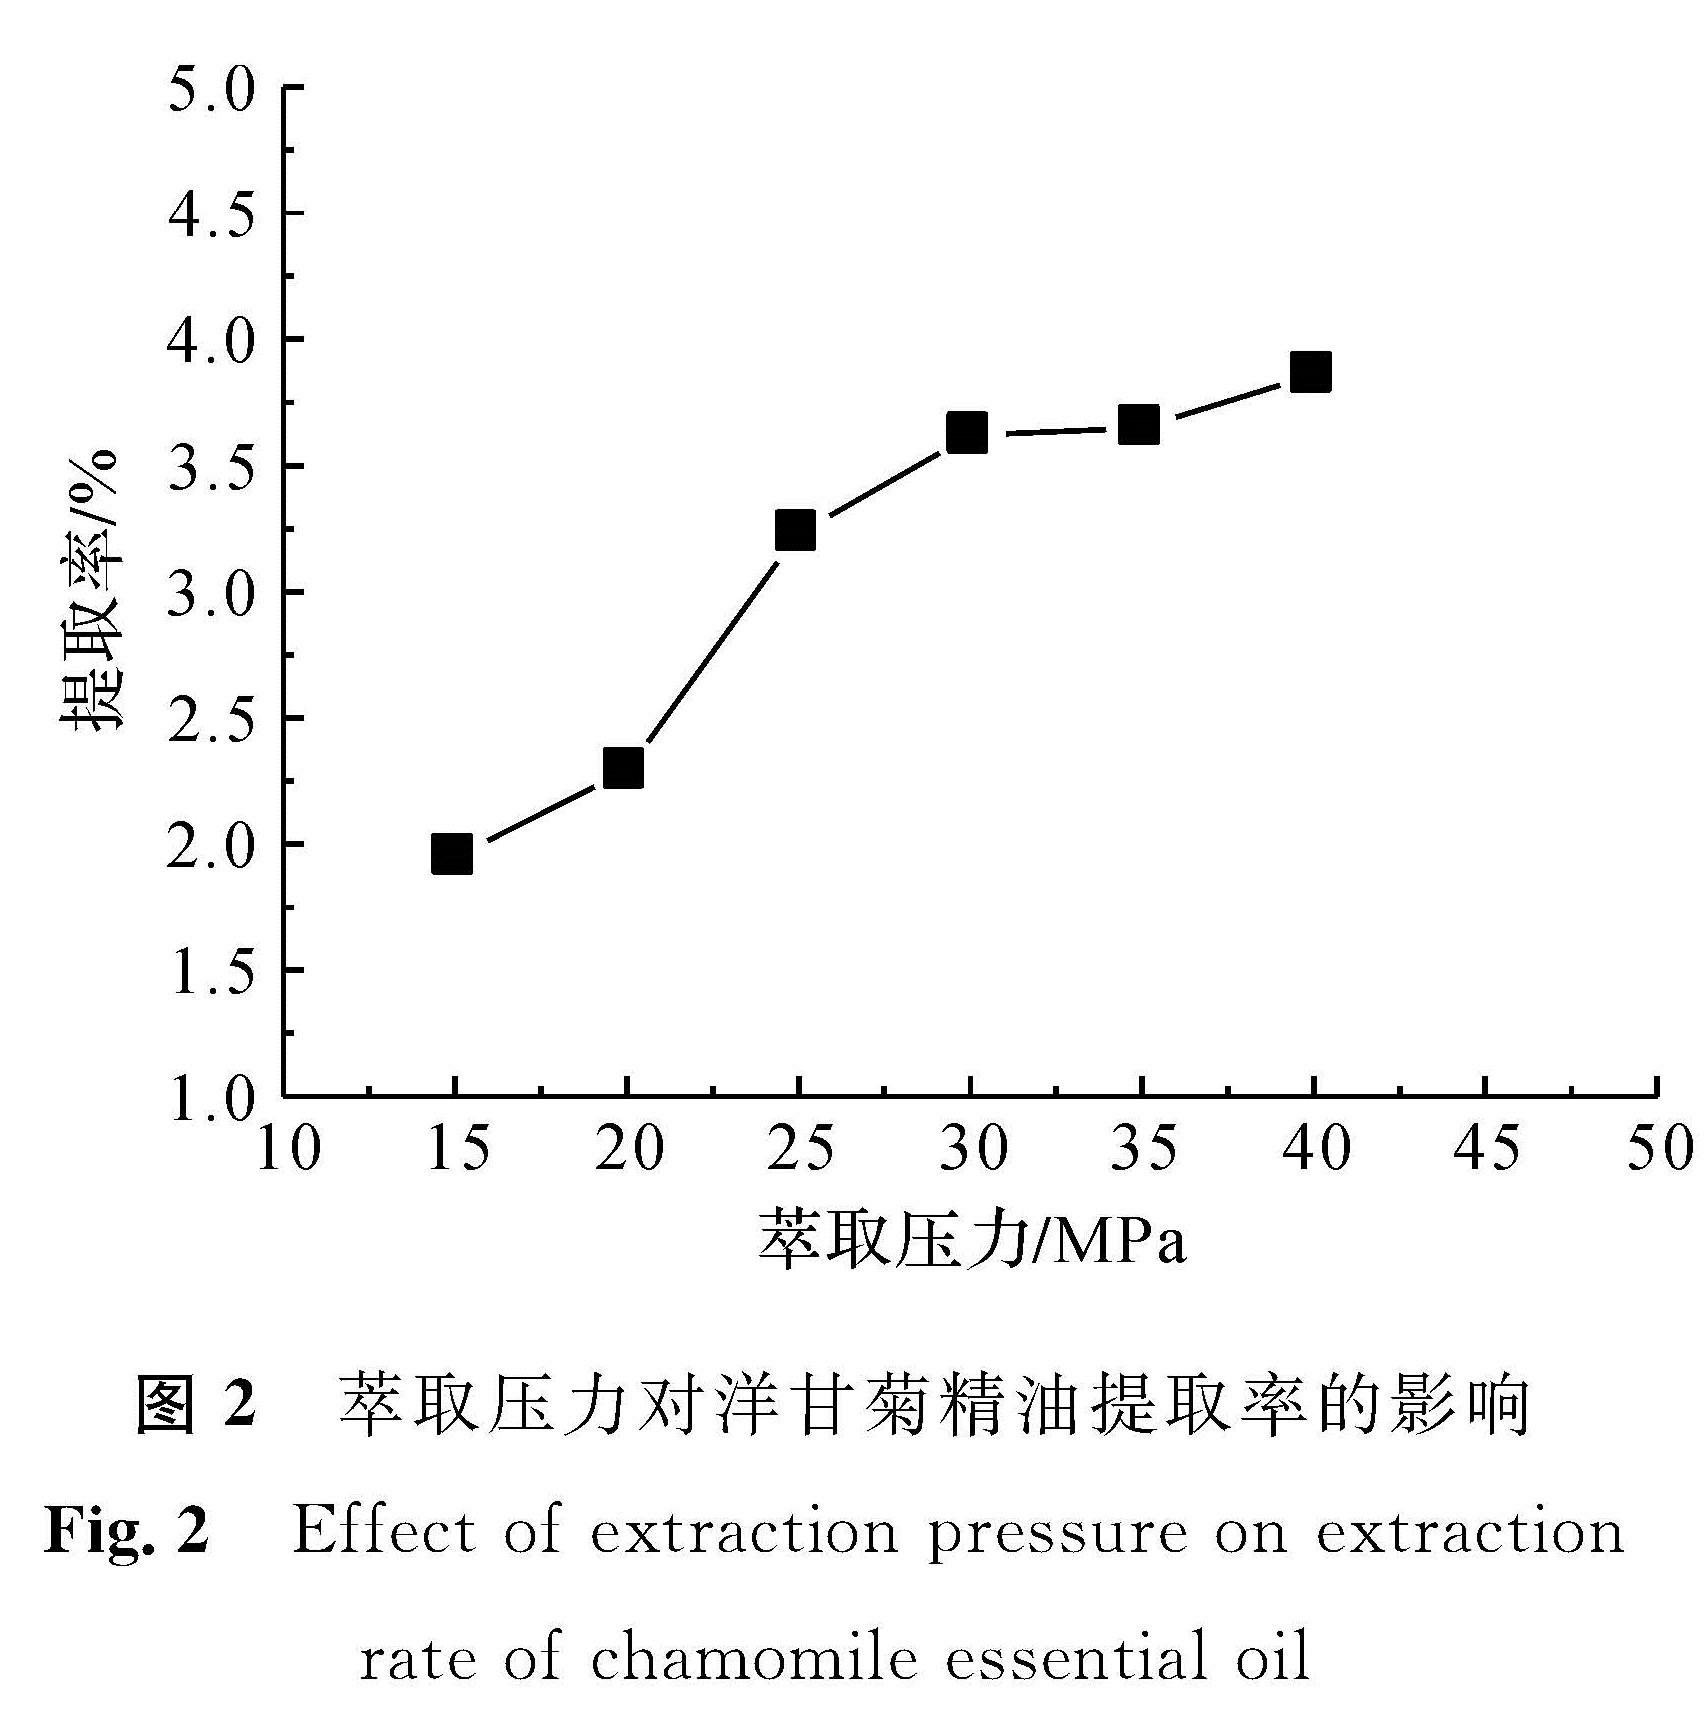 图2 萃取压力对洋甘菊精油提取率的影响<br/>Fig.2 Effect of extraction pressure on extraction rate of chamomile essential oil